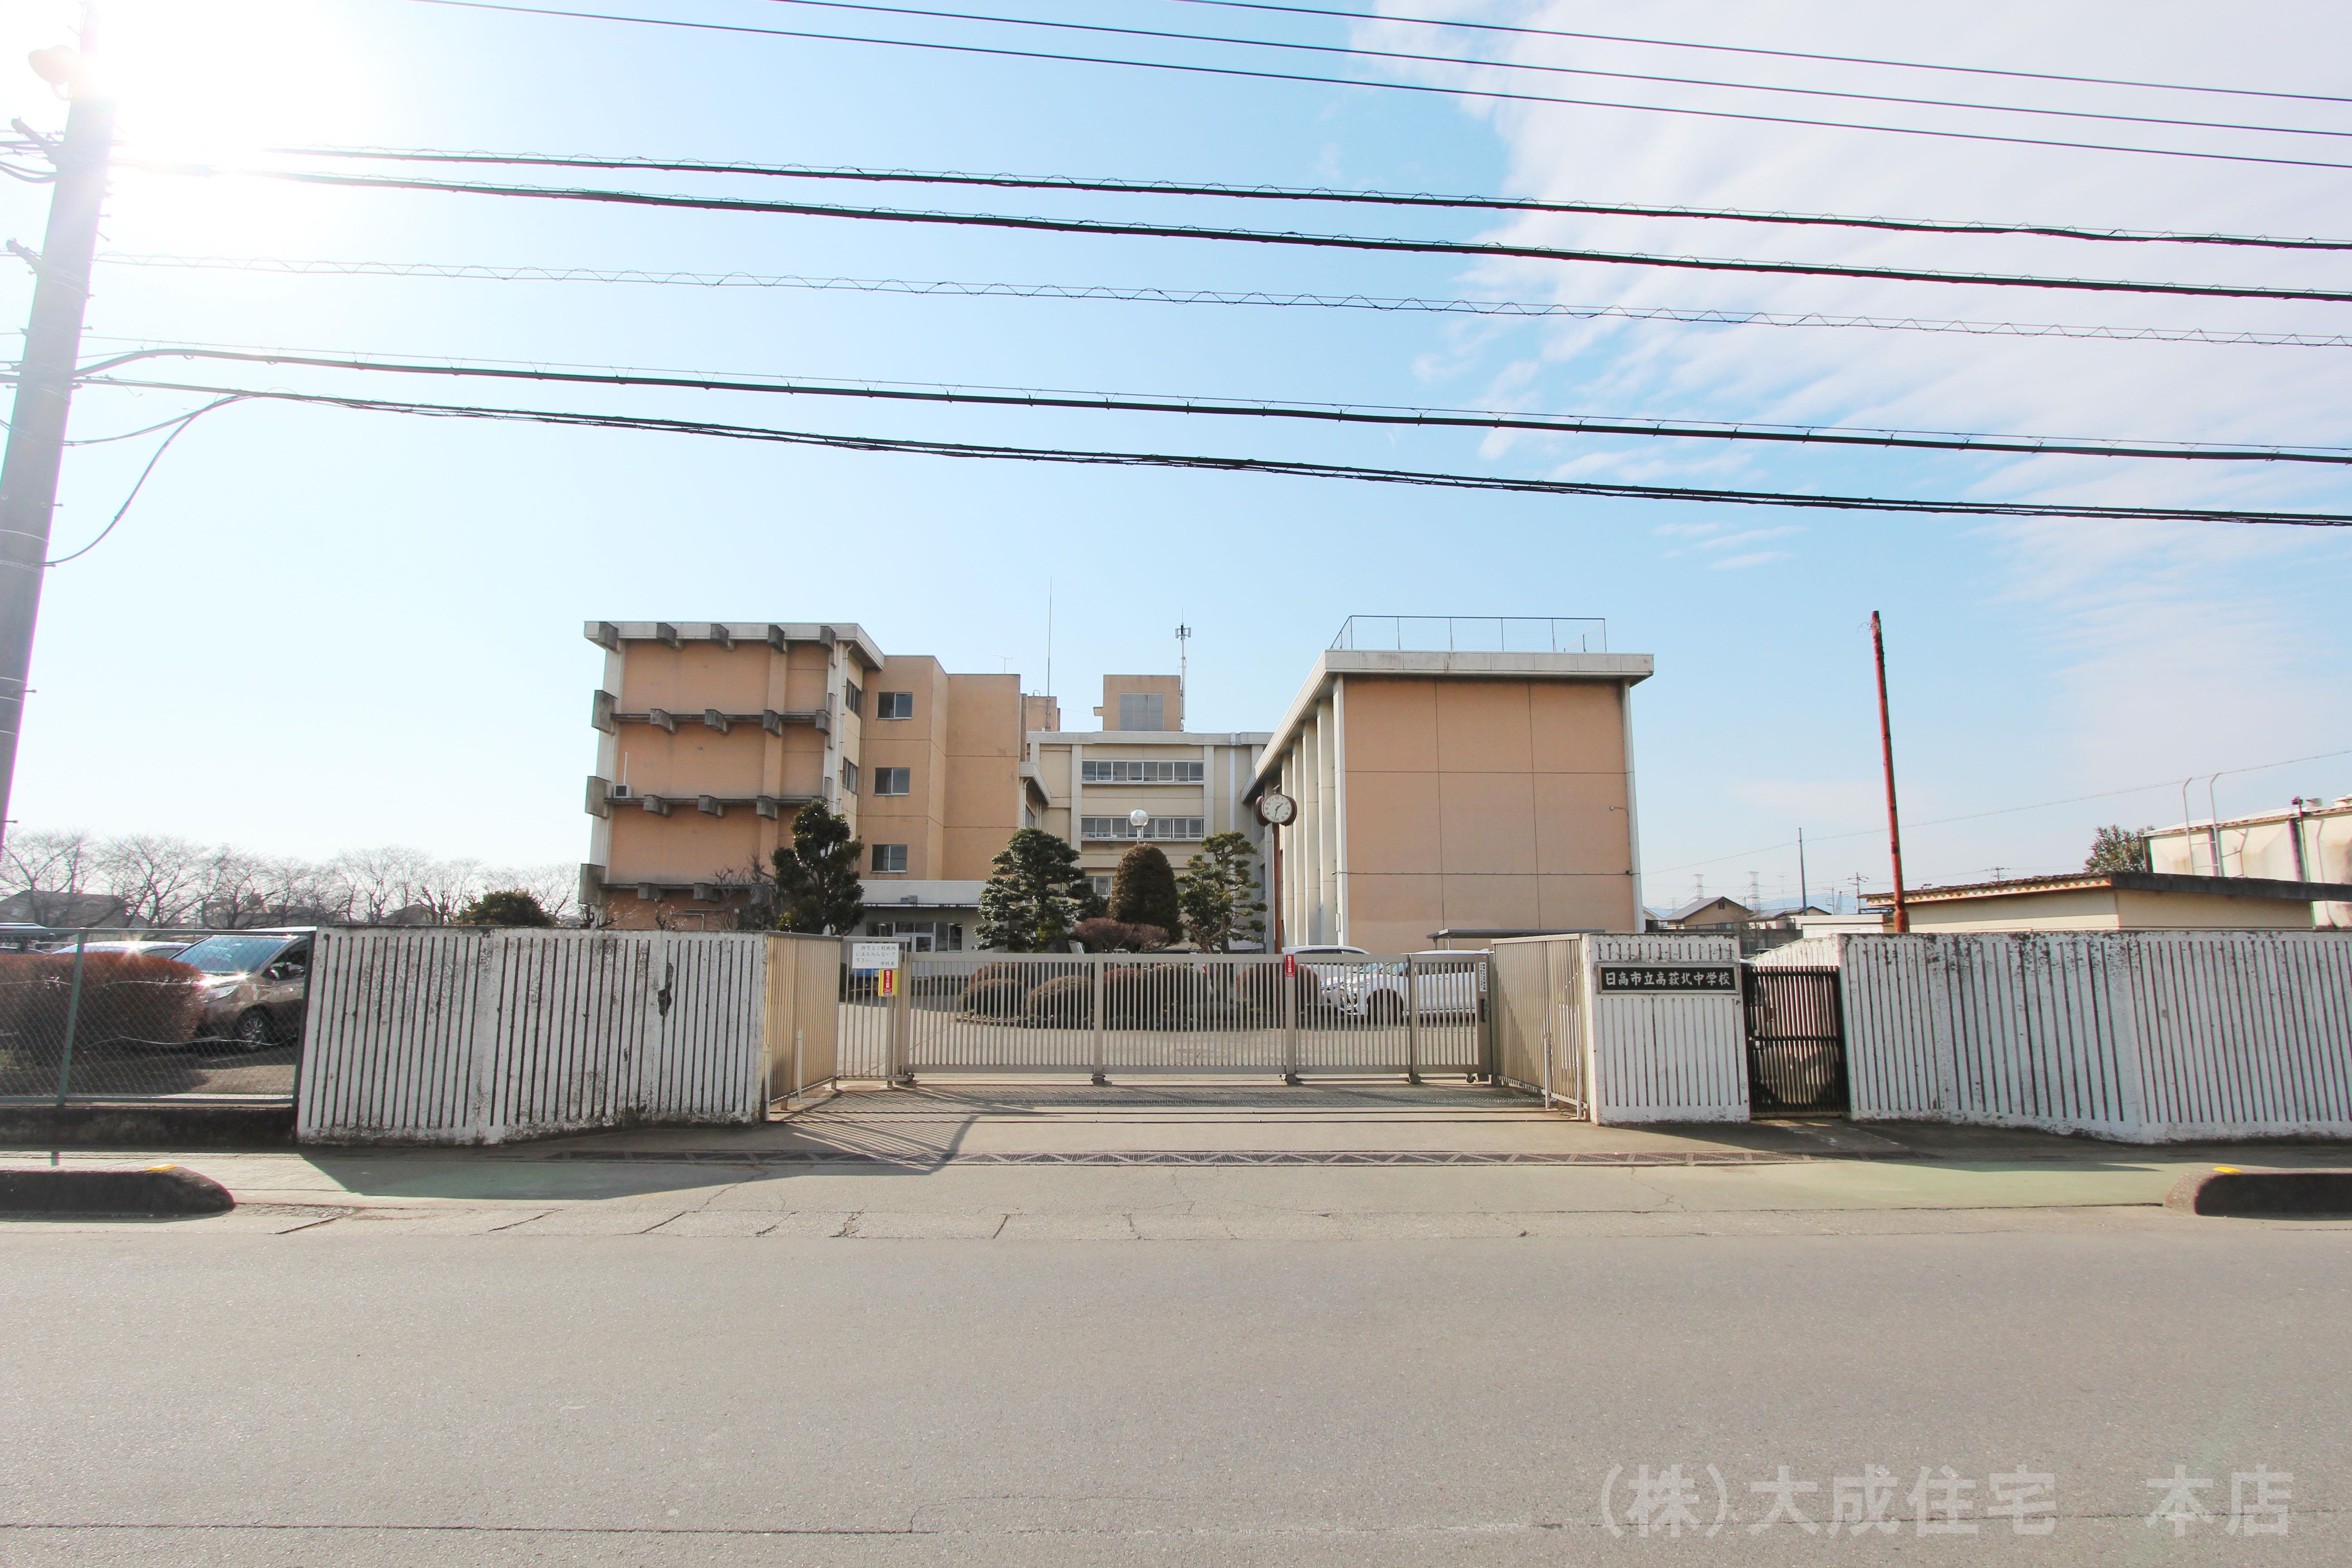 中学校(600m)-日高市立高萩北中学校(教育目標は「自立・創造・貢献」です。)